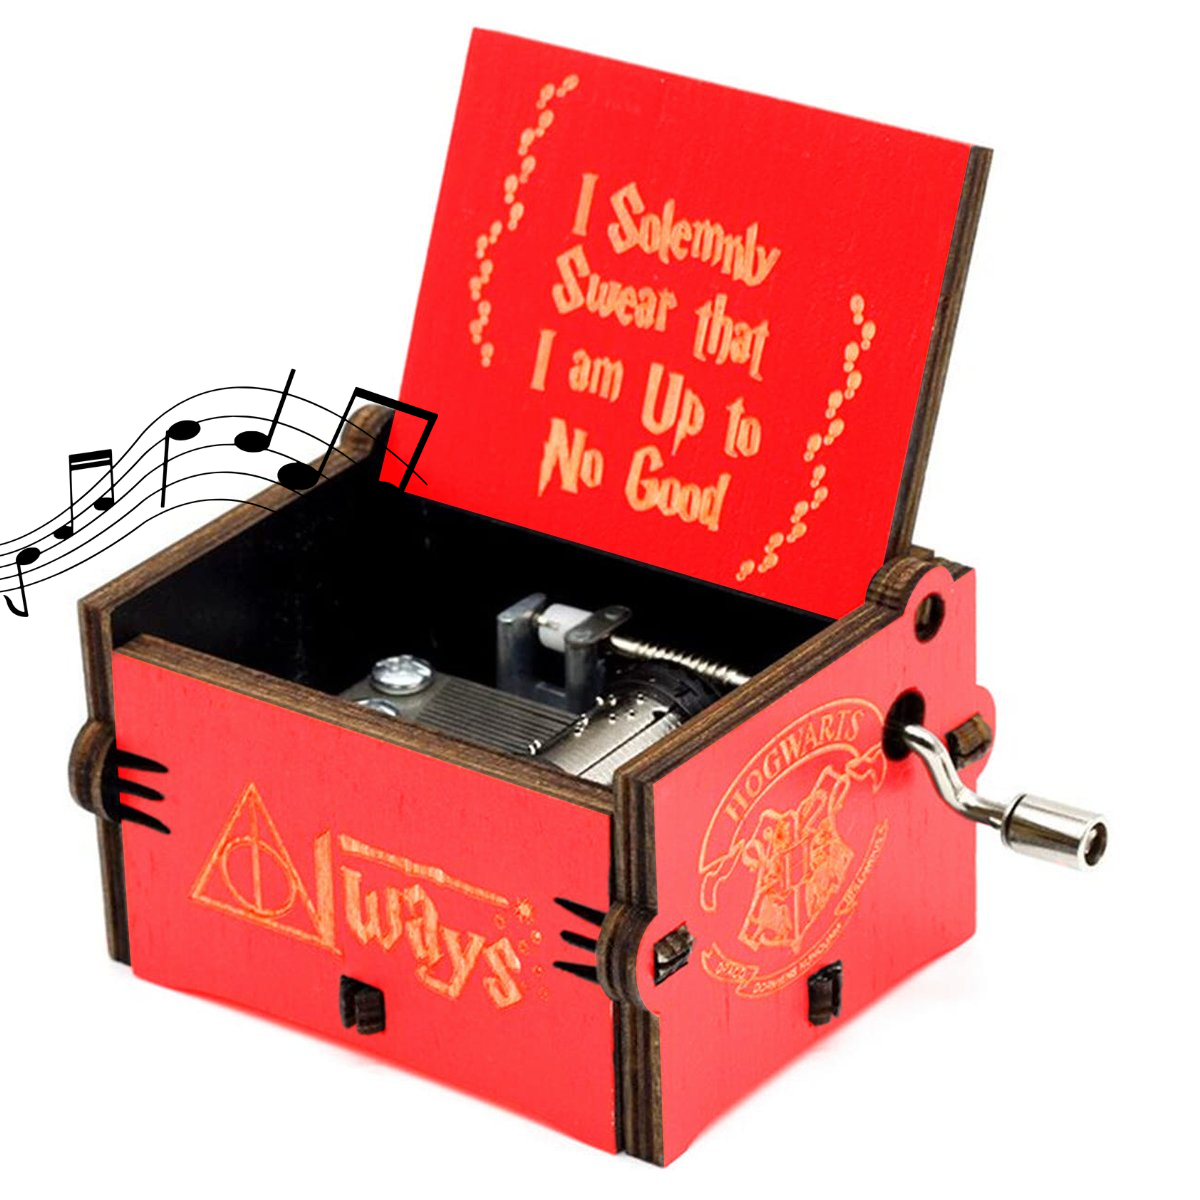 HOLZBOX wählbar HARRY POTTER Spieluhr Musikbox Musicbox Fanartikel NEU 